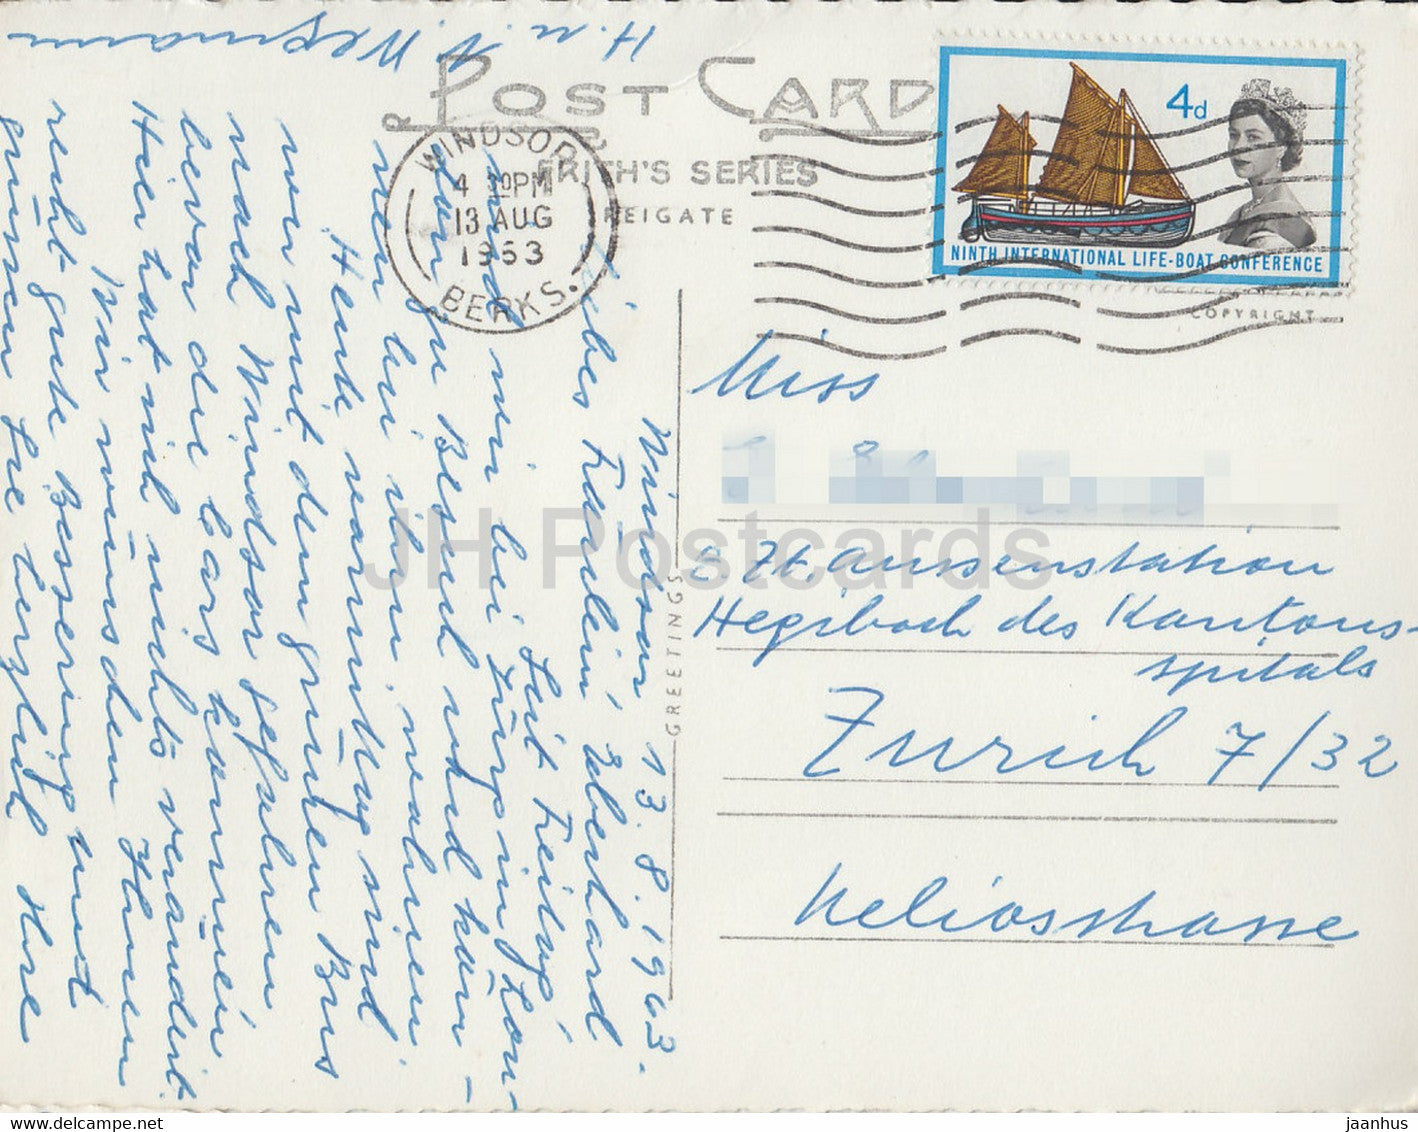 Windsor Castle vom Fluss aus – 35374 – alte Postkarte – 1953 – England – Vereinigtes Königreich – gebraucht